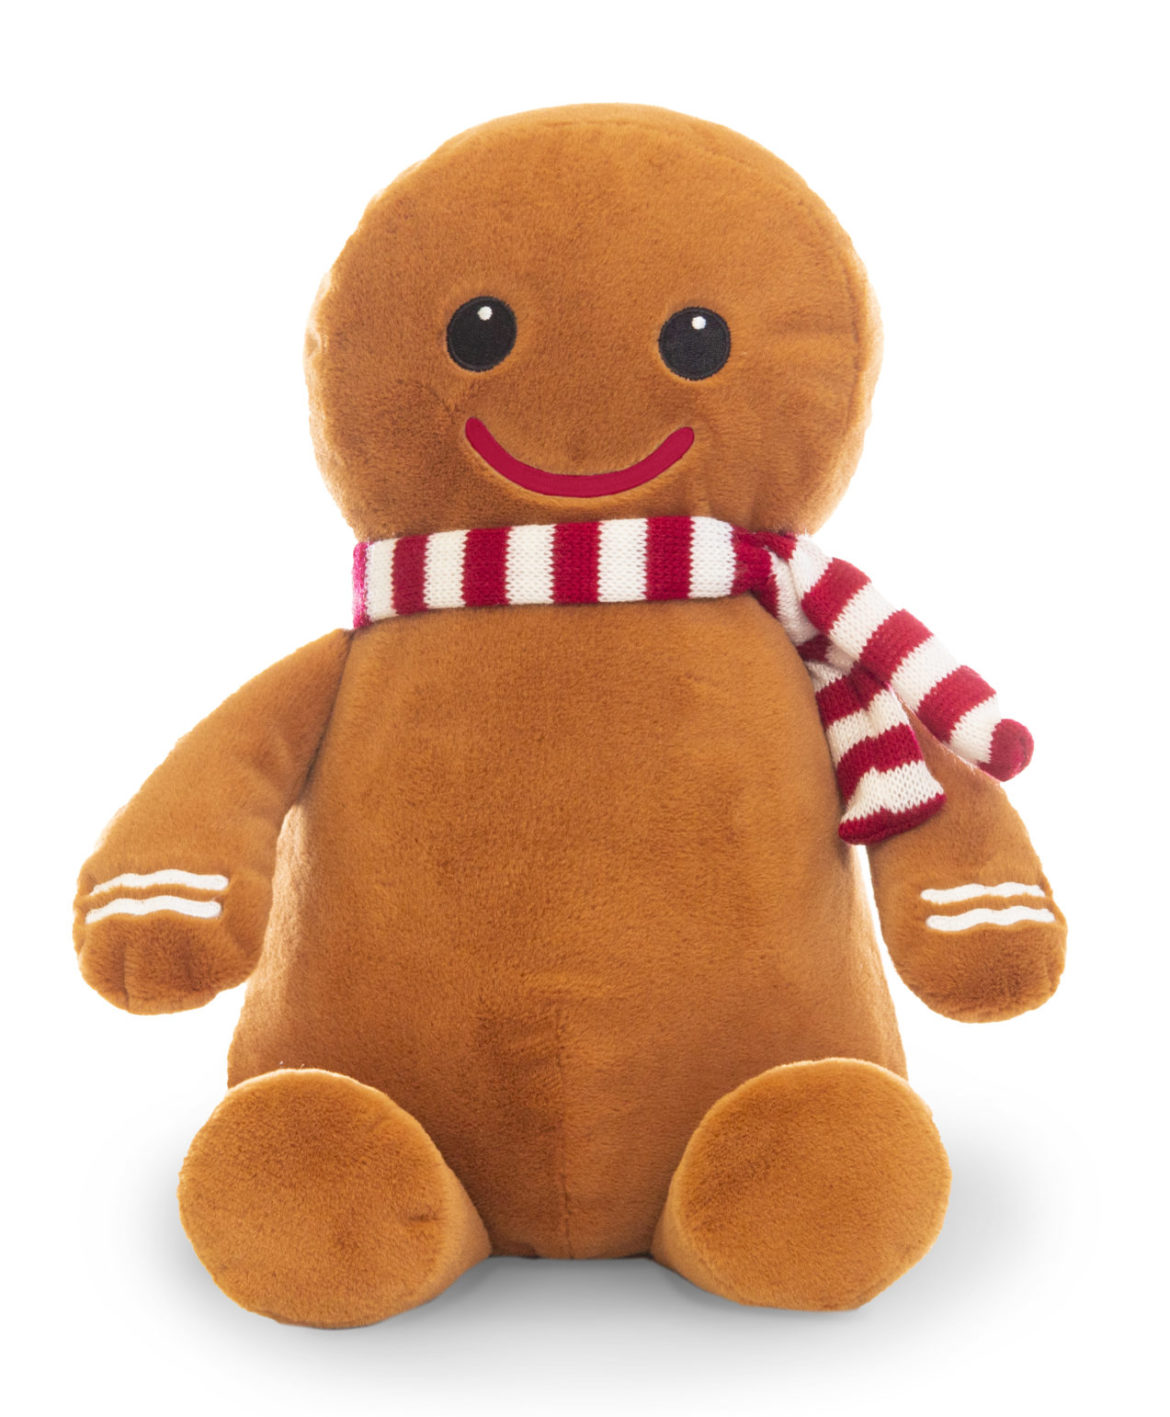 Gingerbread-Man-21-scaled-e1654600553728.jpg